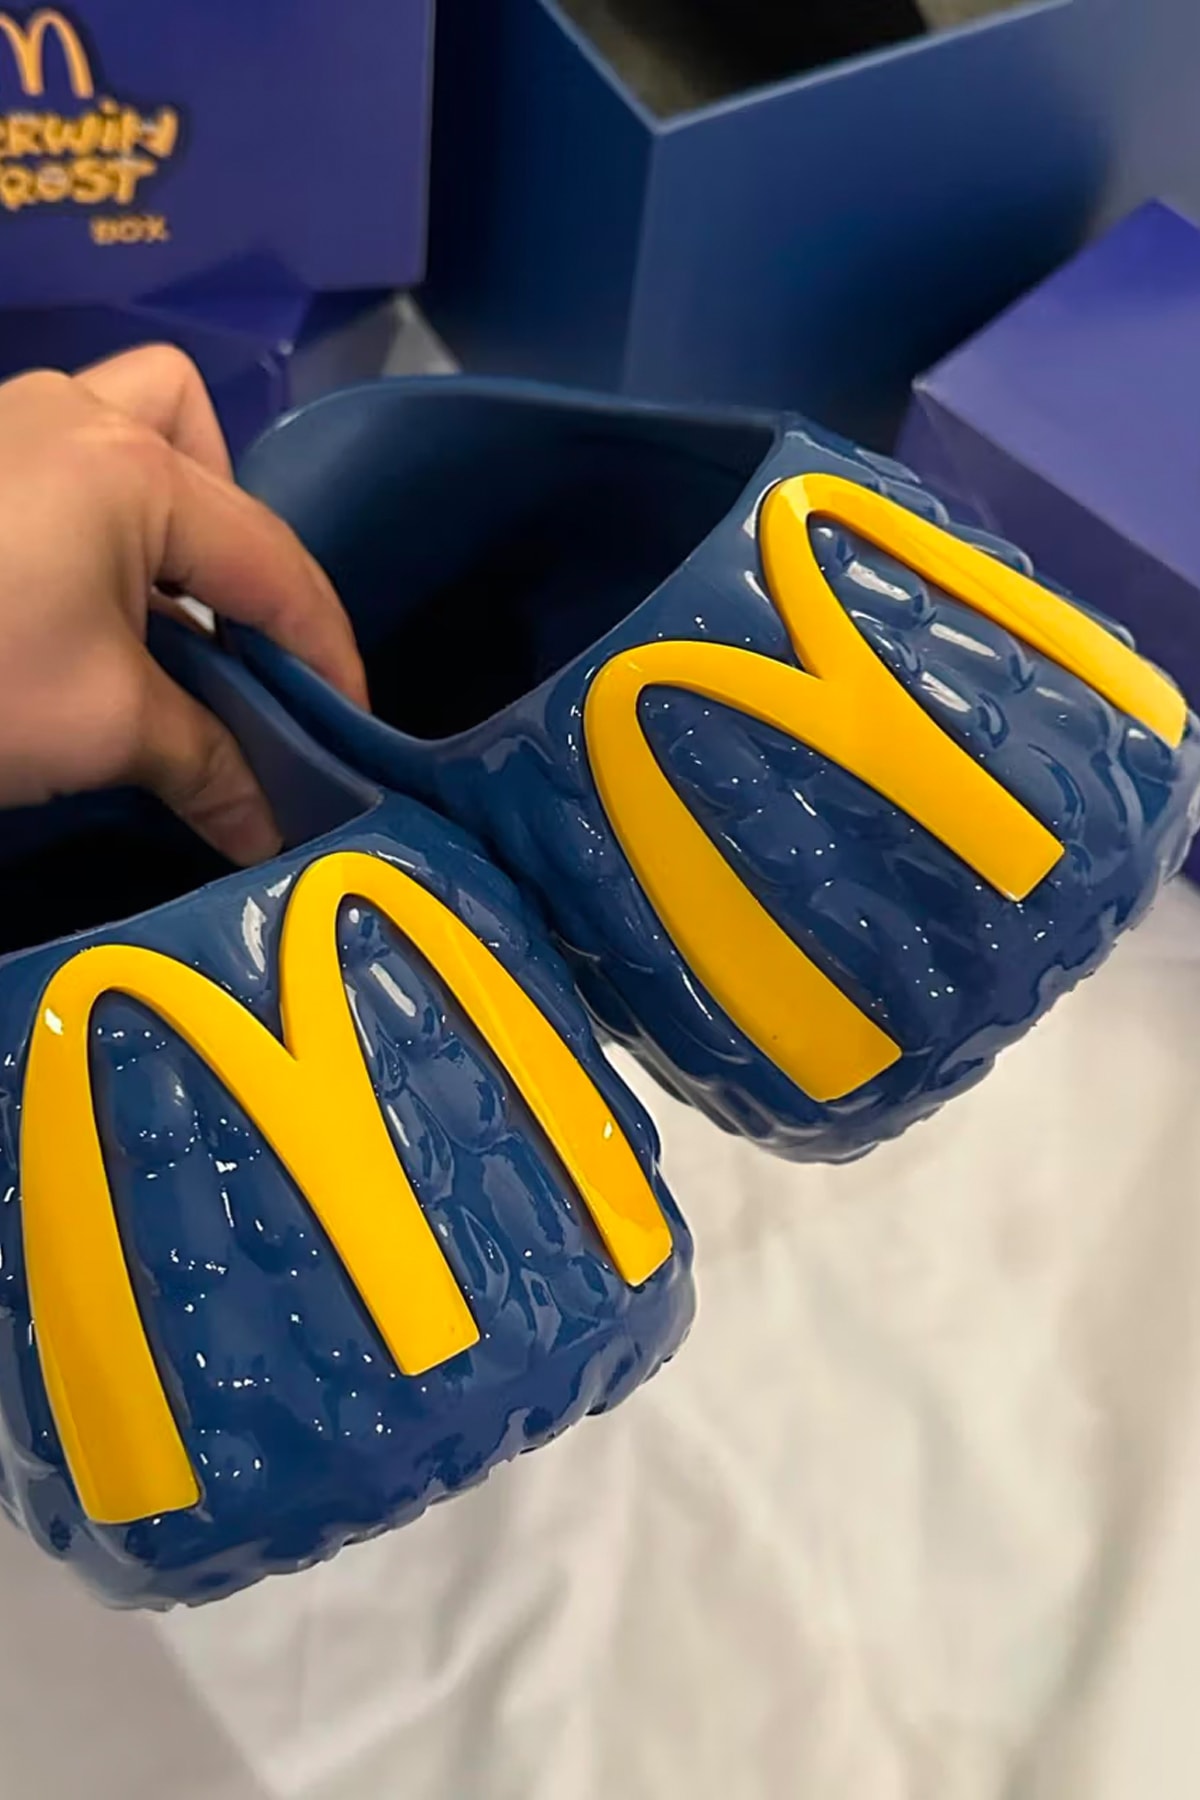 Kerwin Frost 攜手 McDonald's 打造全新聯名鞋款「Fry Guy」